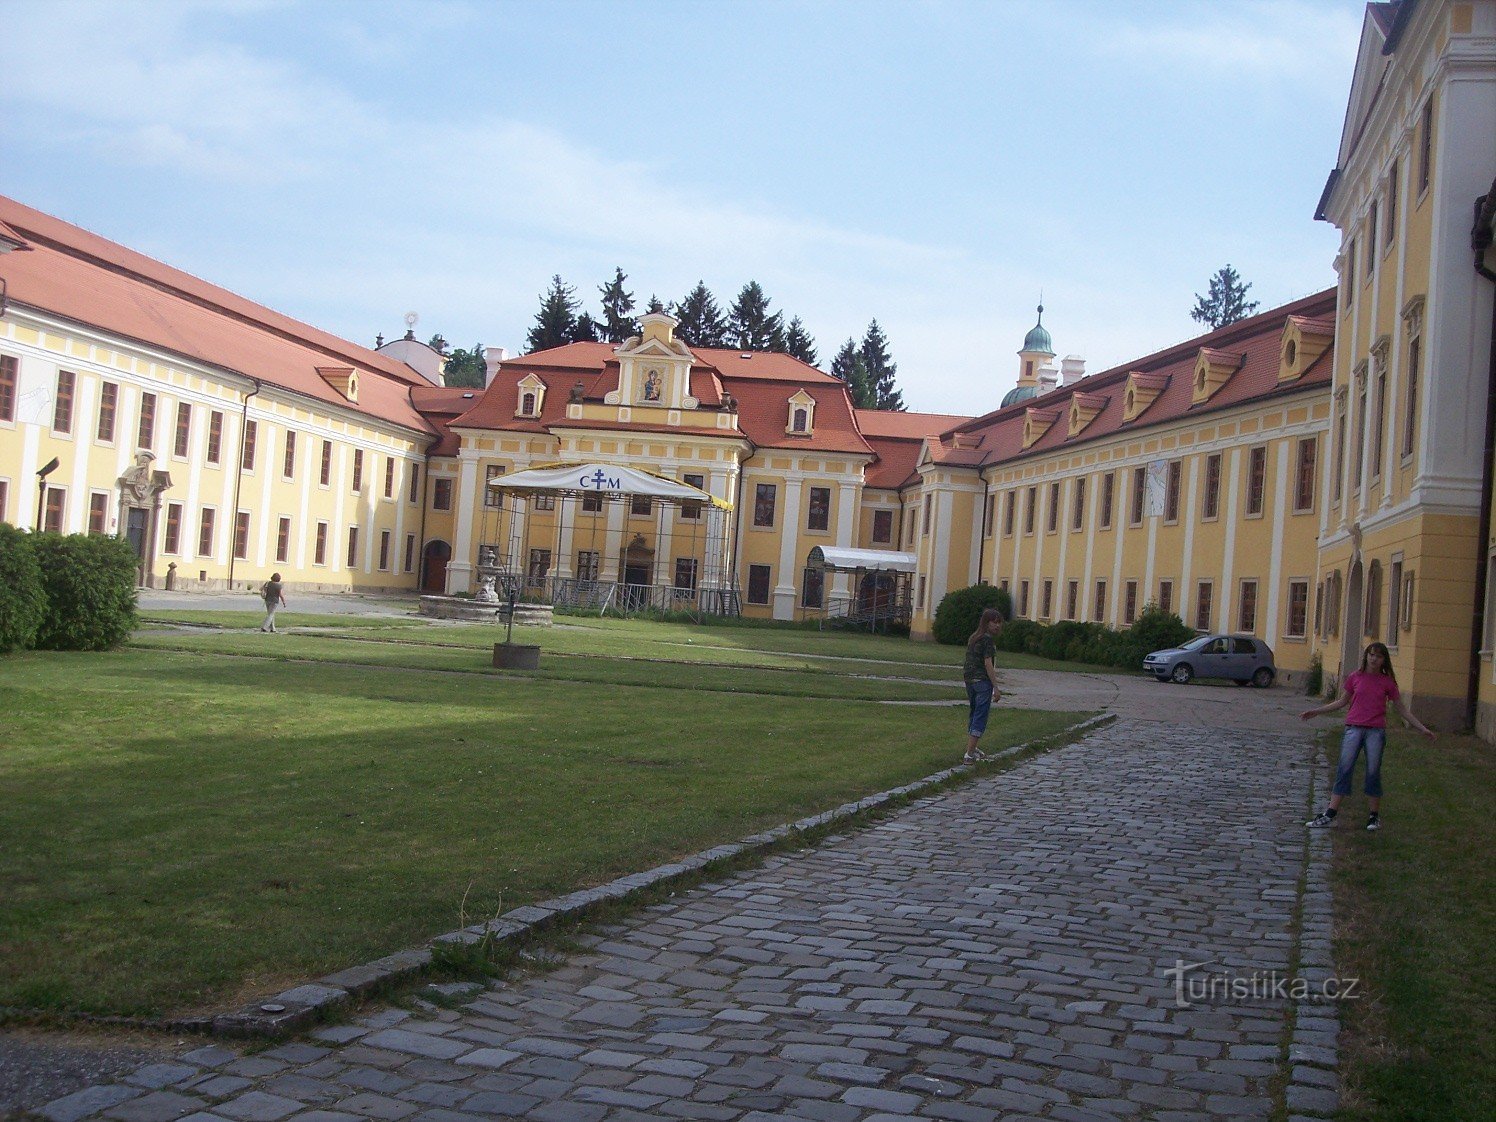 Klosteranlage